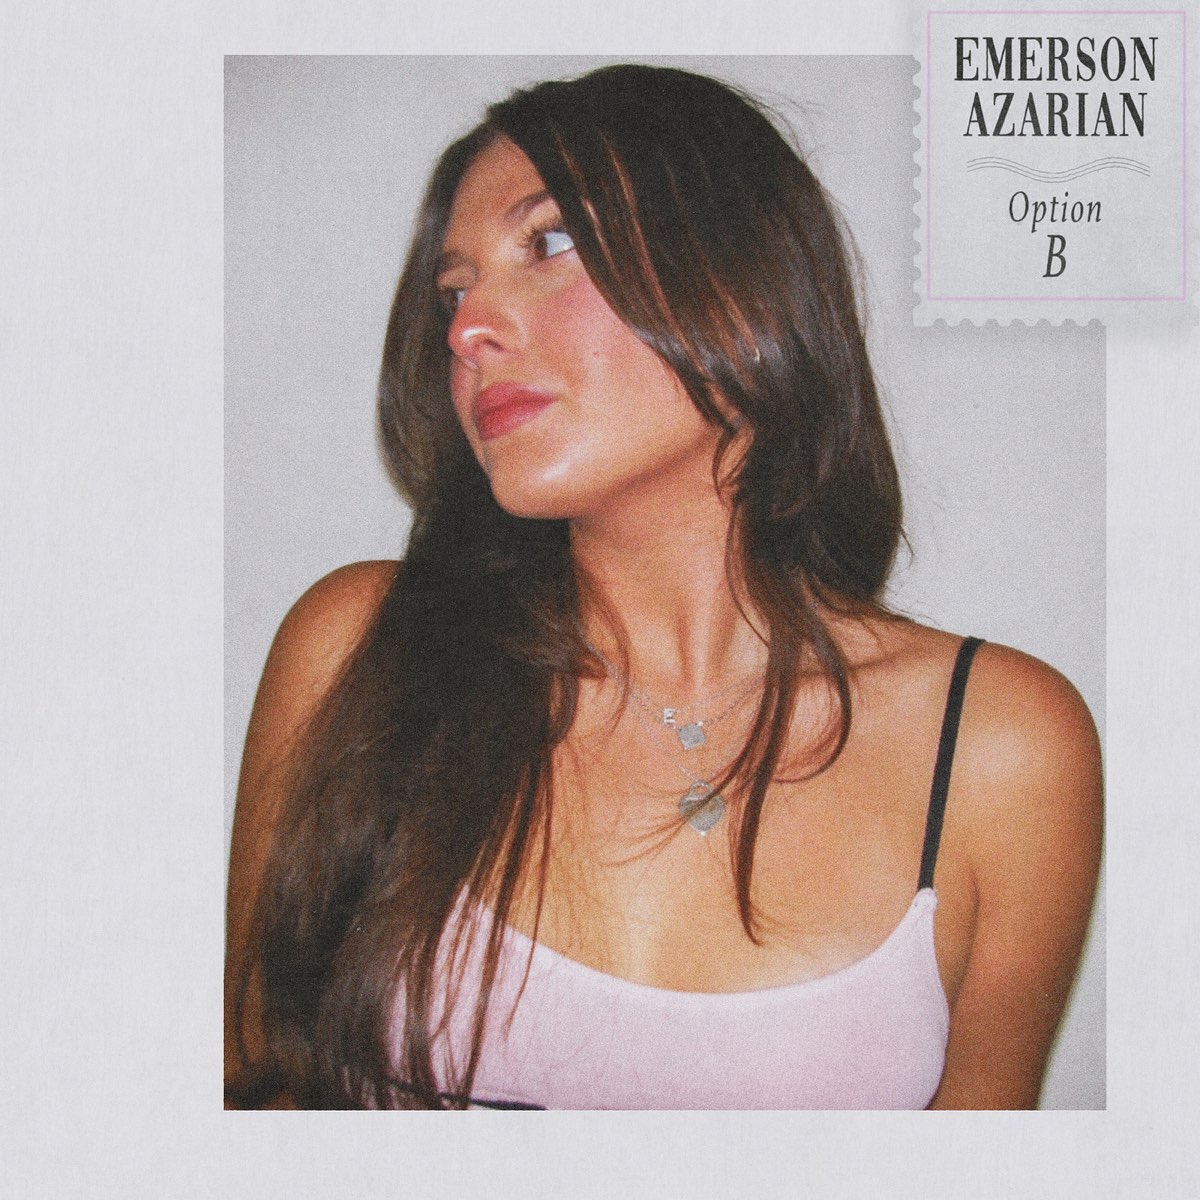 Emerson Azarian Option B cover artwork